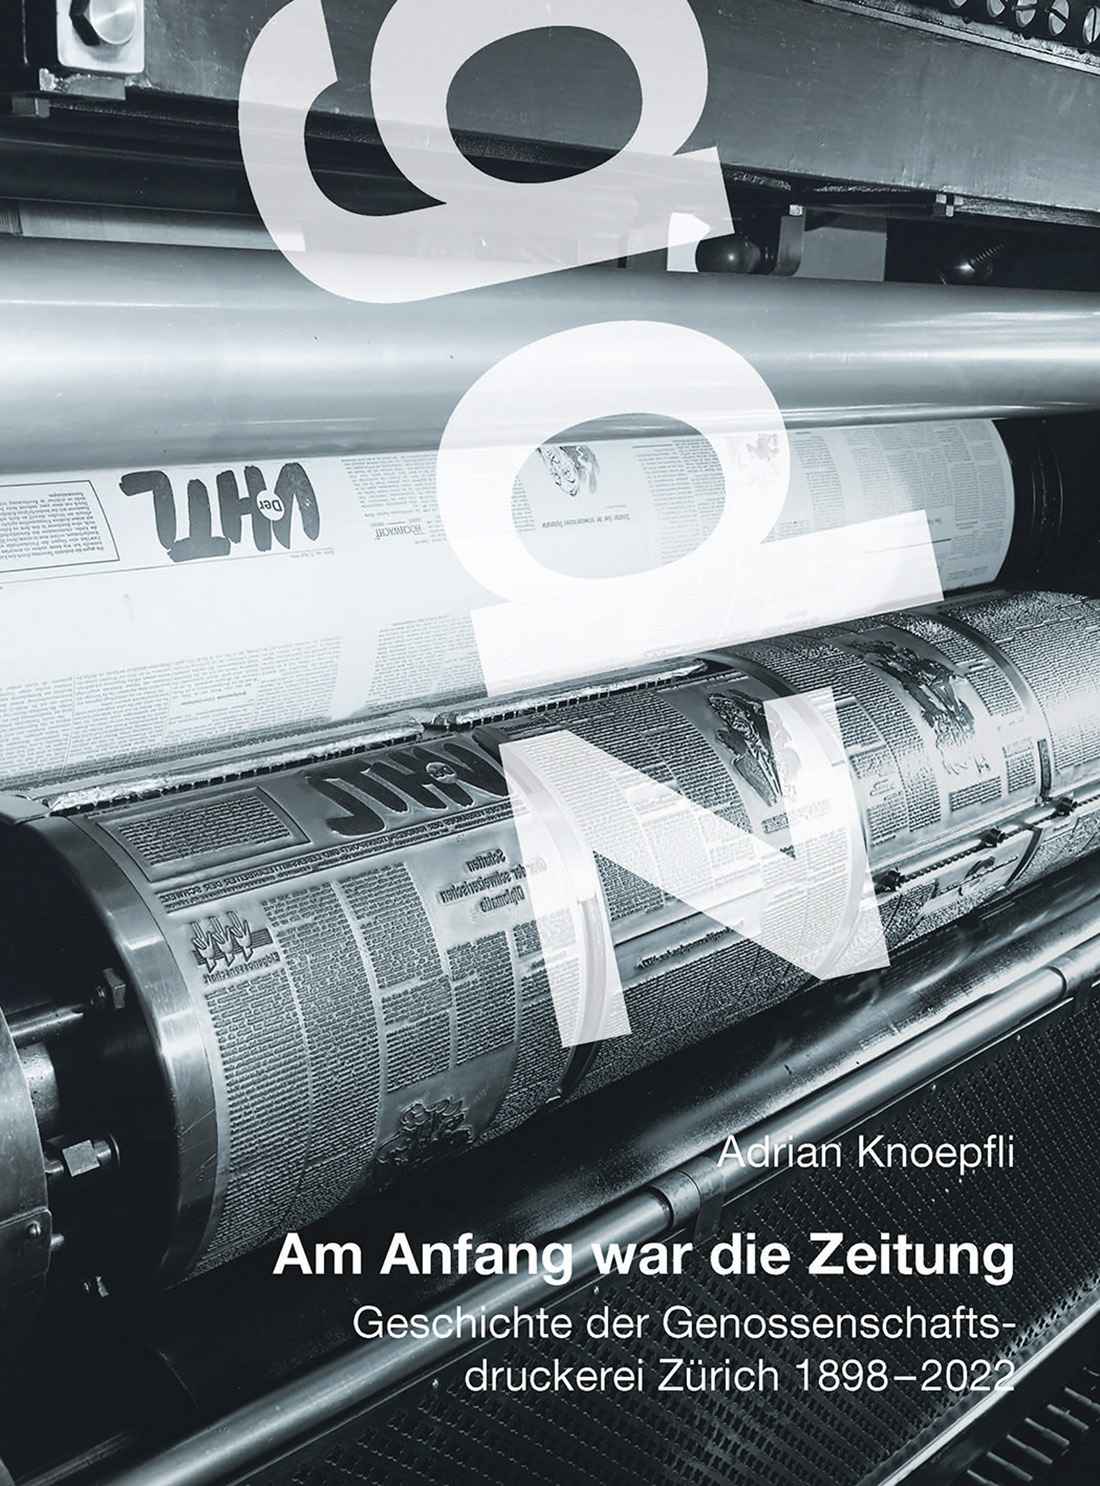 ‘gdz – am Anfang war die Zeitung’ [‘gdz – in the beginning was the newspaper’] by Adrian Knoepfli